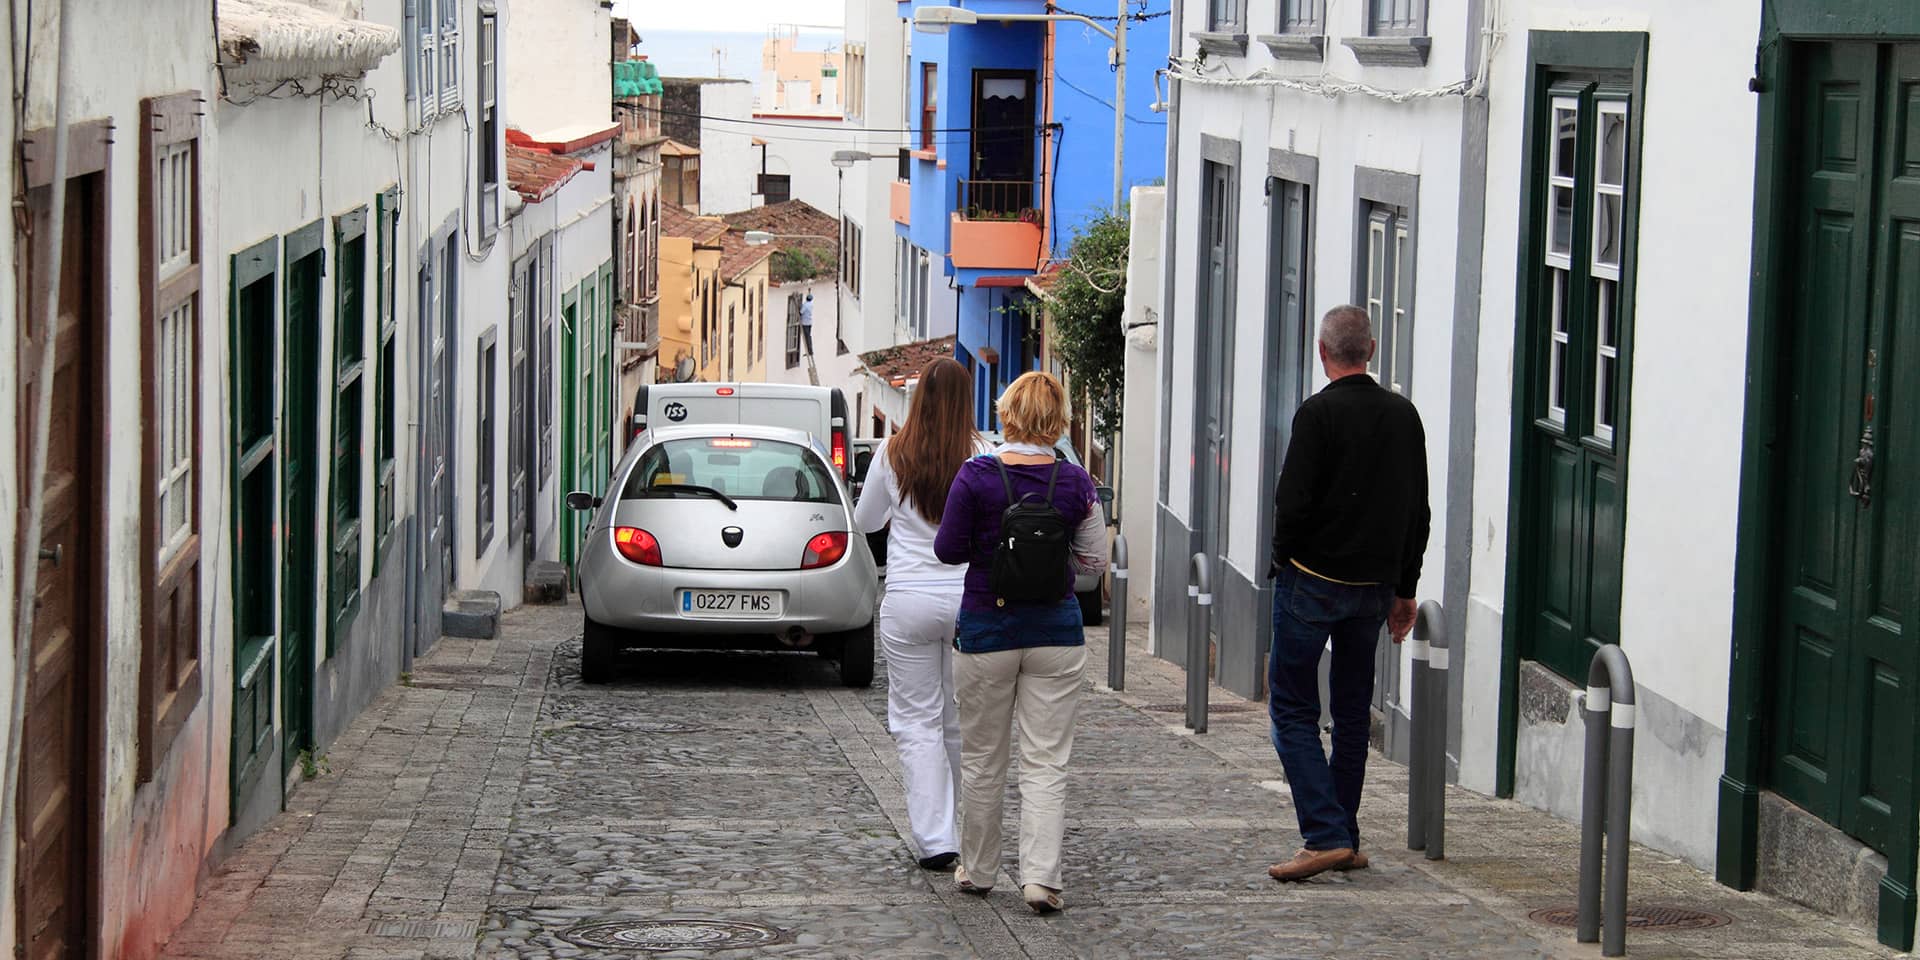 Billede af turister i gade i middelhavsby, Spanien